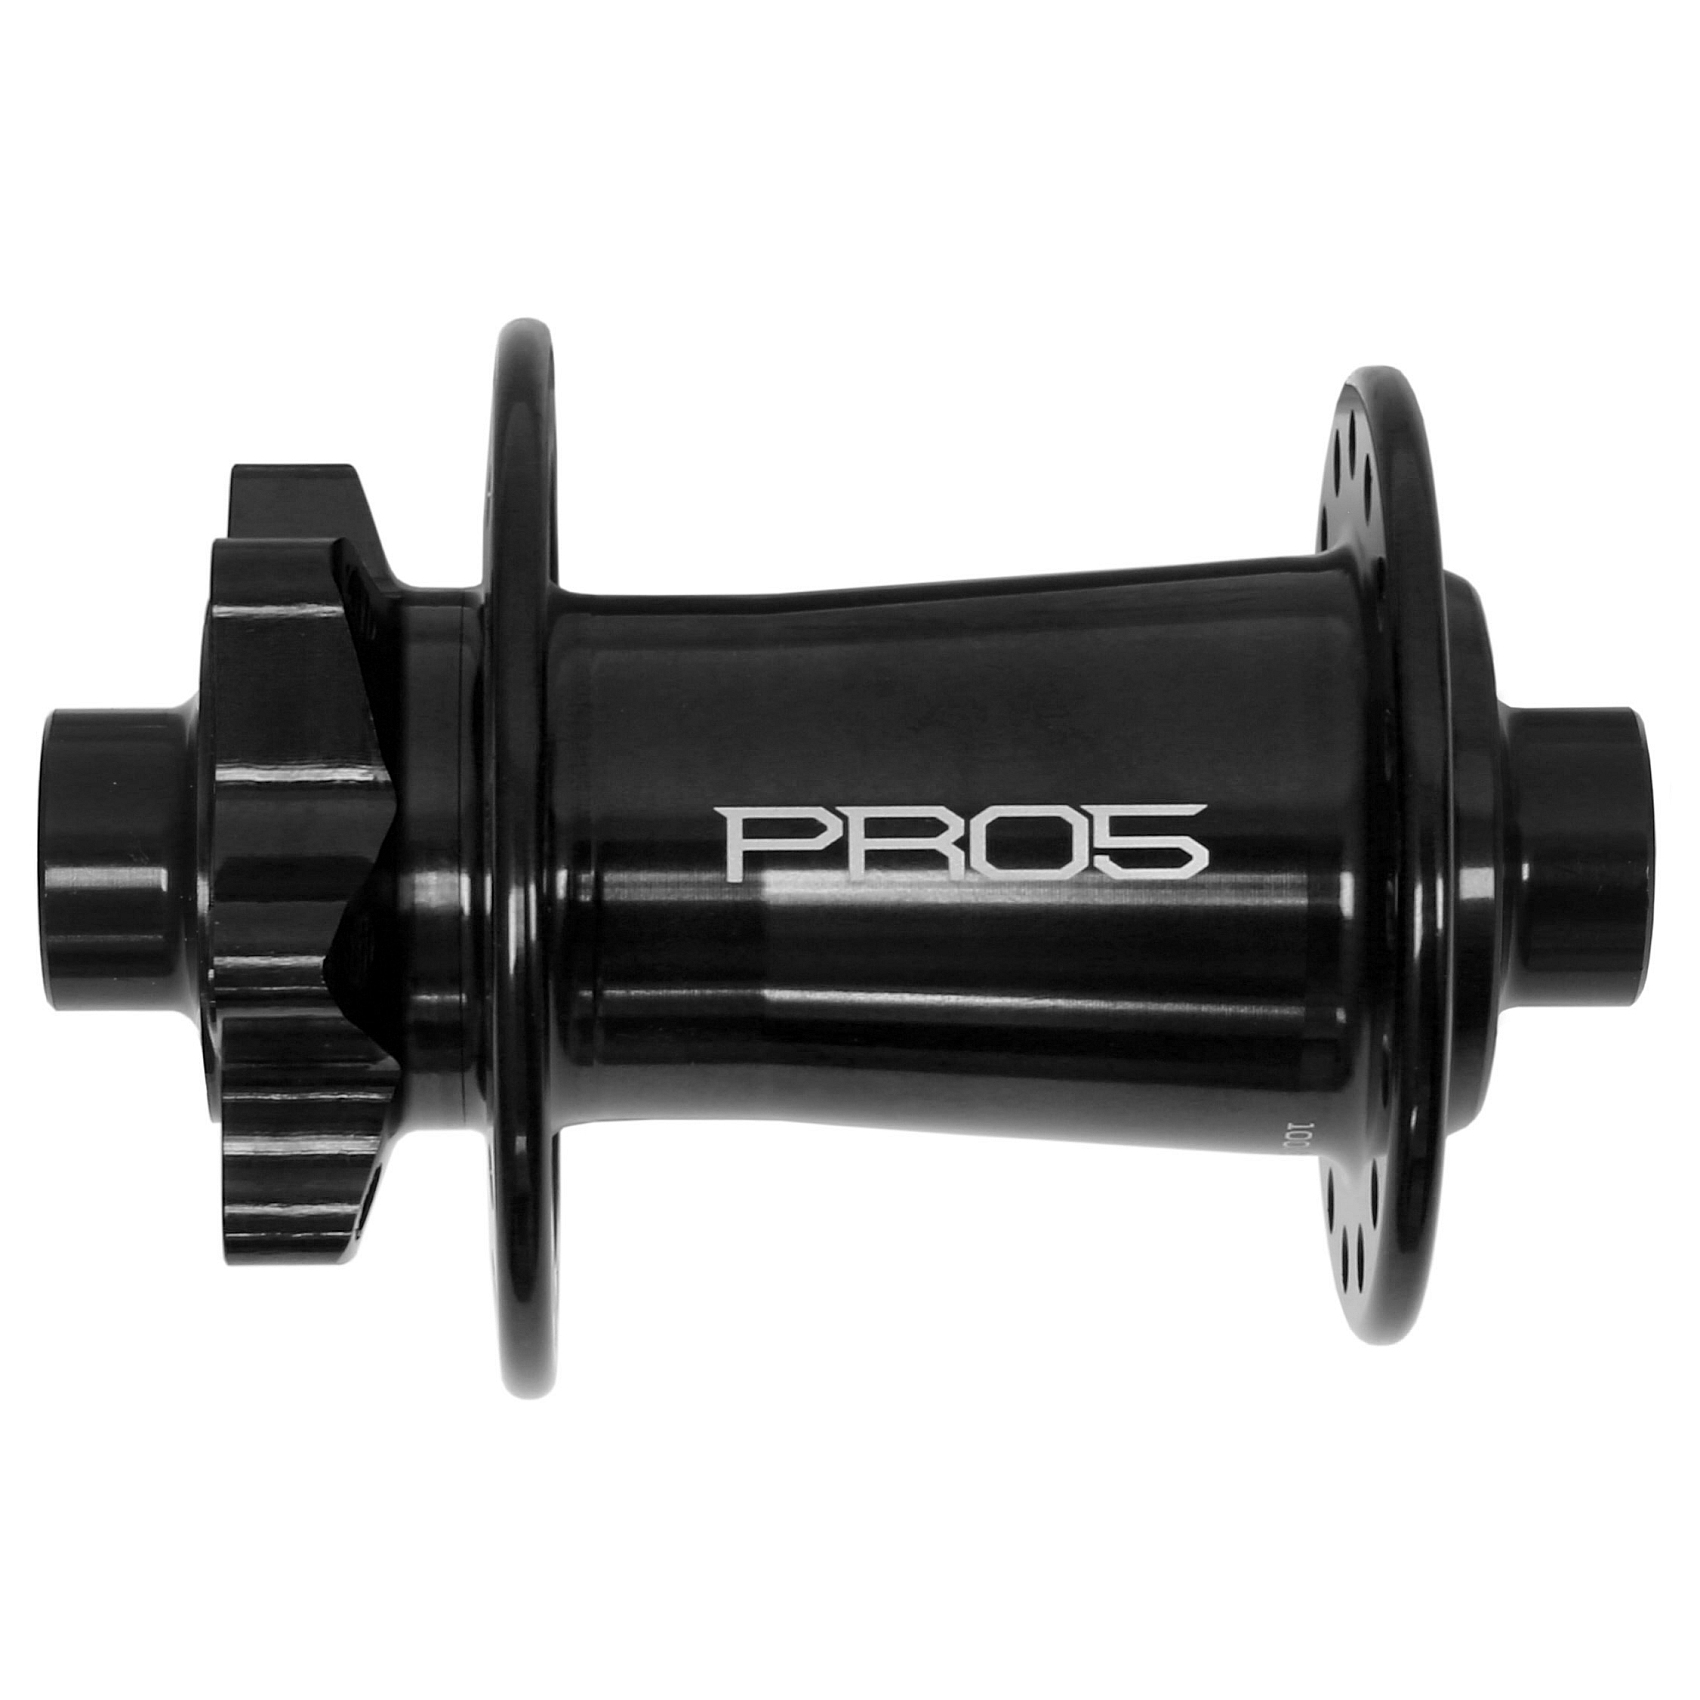 Productfoto van Hope Pro 5 Voorwielnaaf - 6-Bolt - 12x100mm - zwart